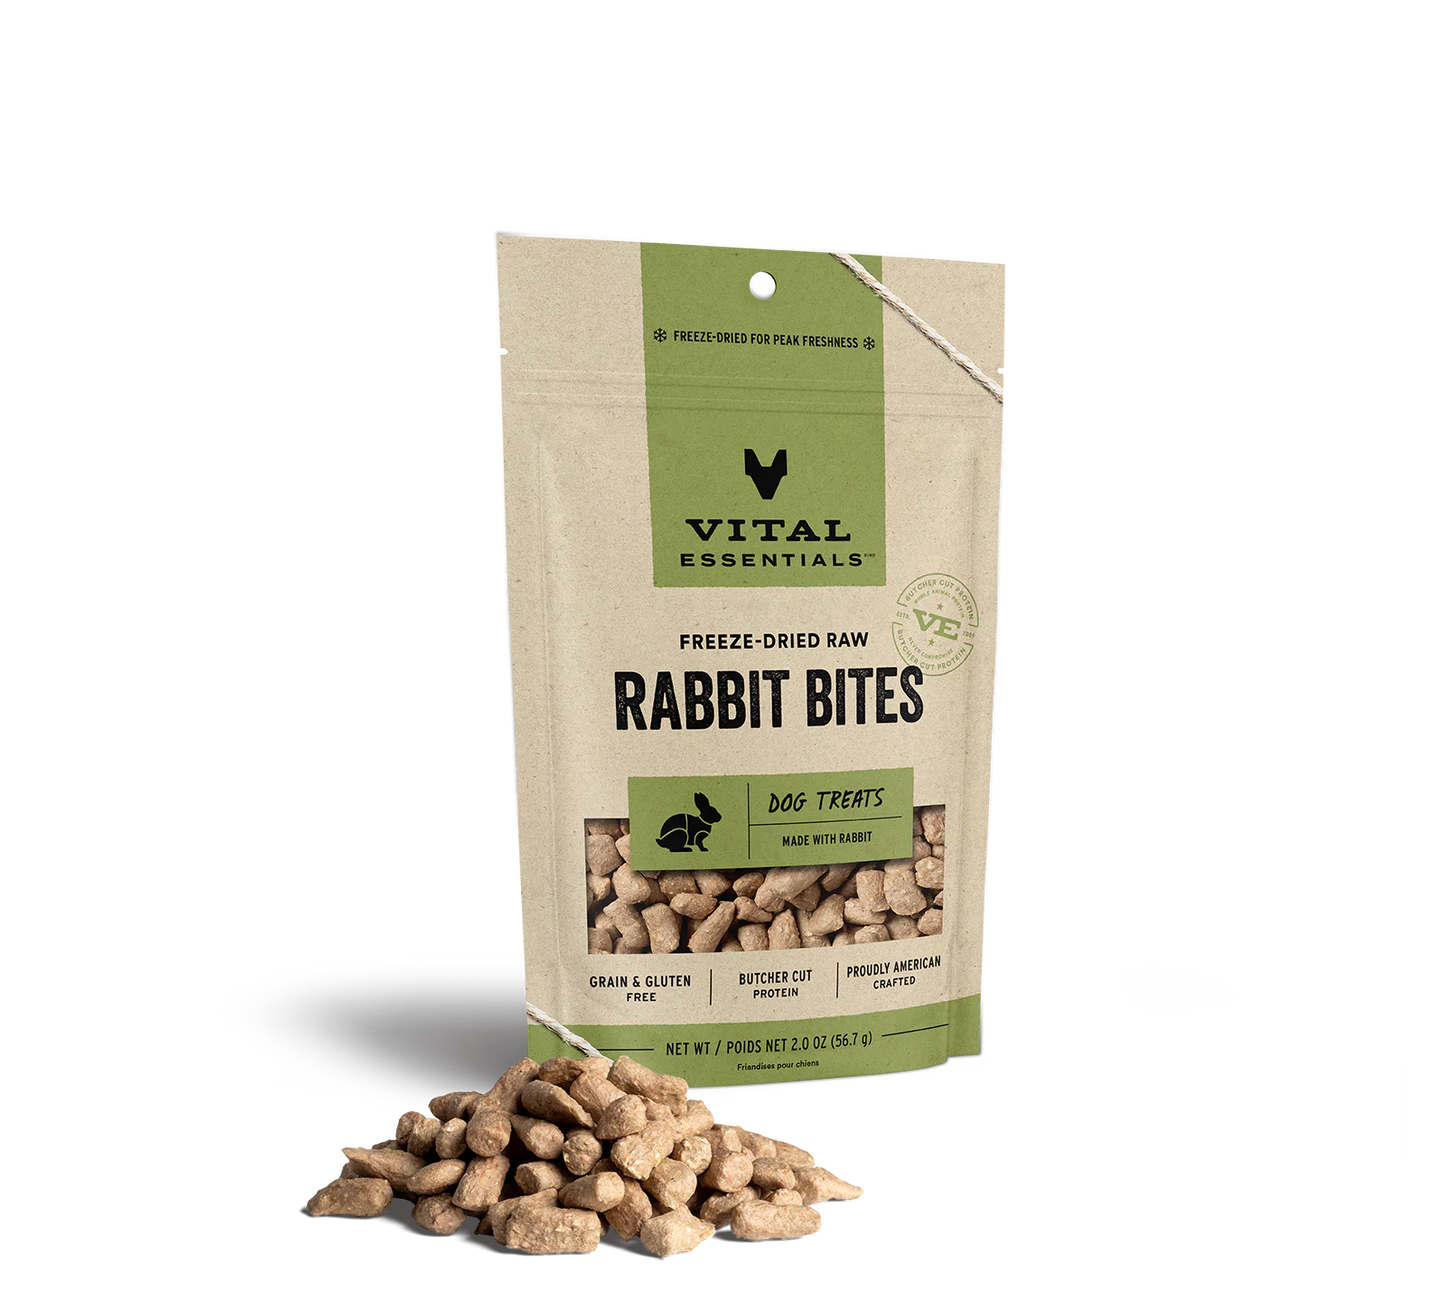 Vital Essentials Freeze-Dried Raw Rabbit Bites 2-oz, Dog Treat